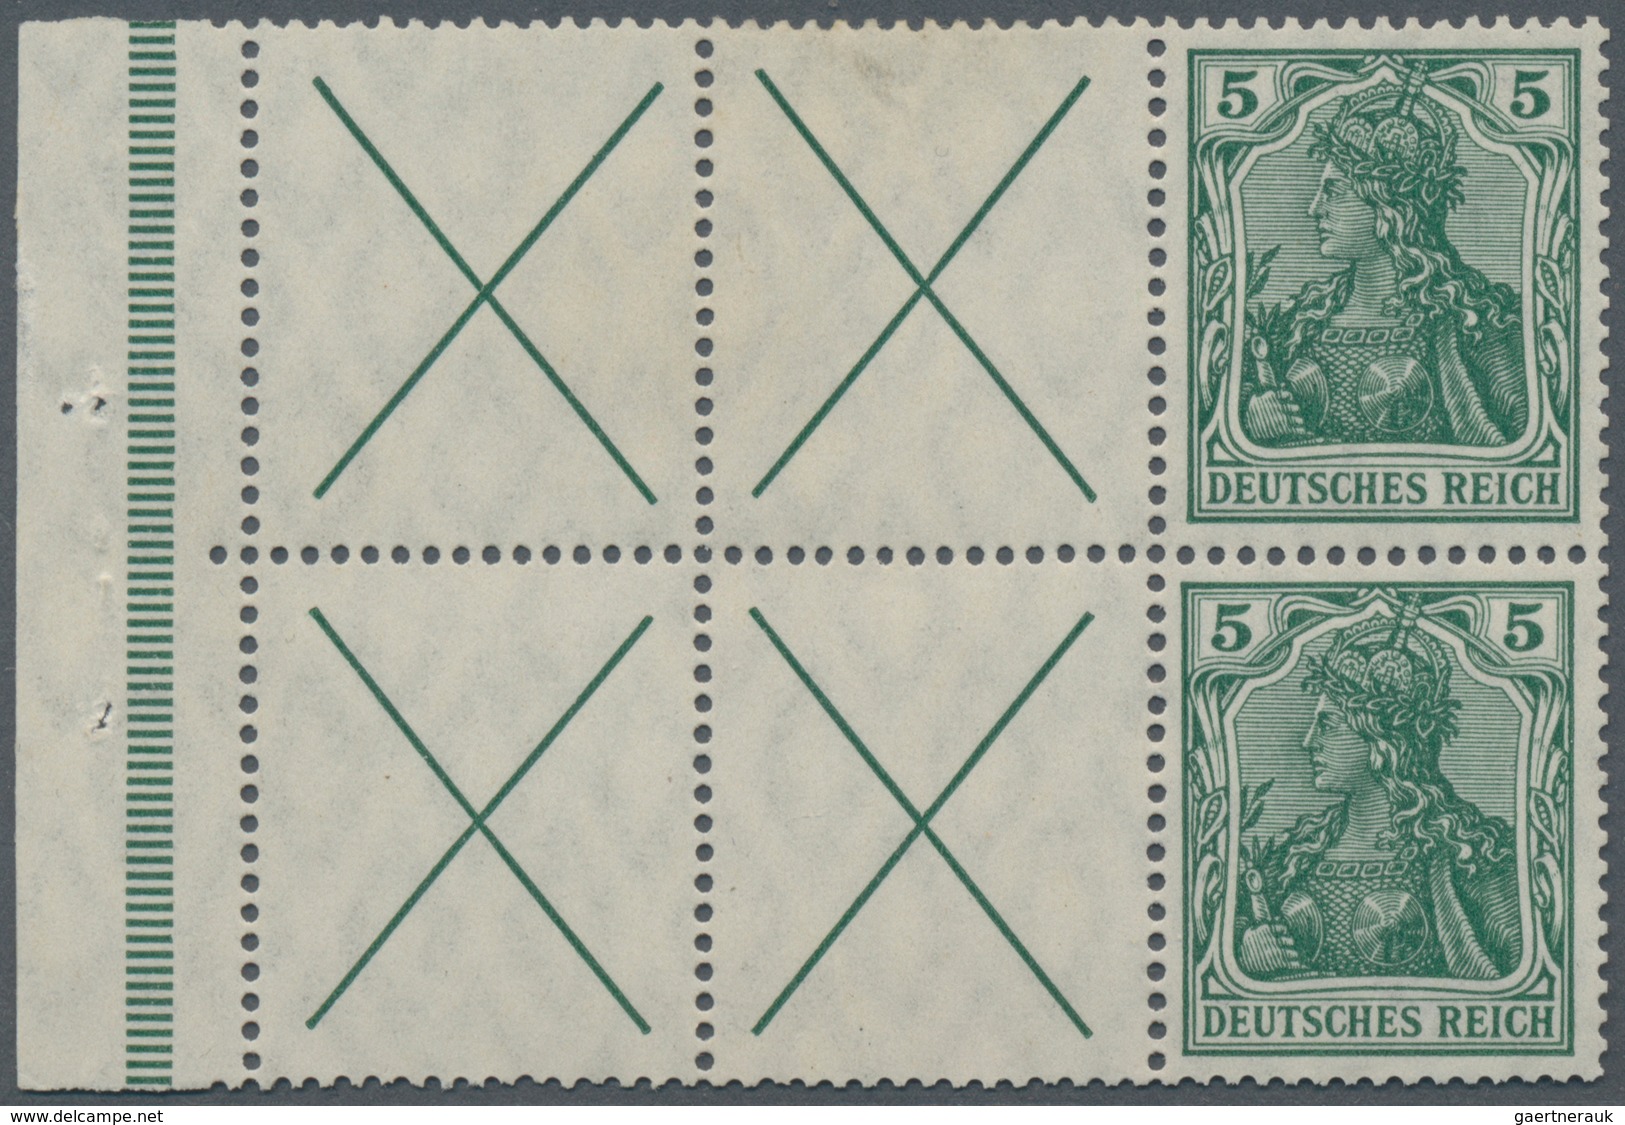 Deutsches Reich - Markenheftchenblätter: 1912, X + 5 Pfg. Germania, Heftchenblatt, Vier Felder Mit A - Markenheftchen